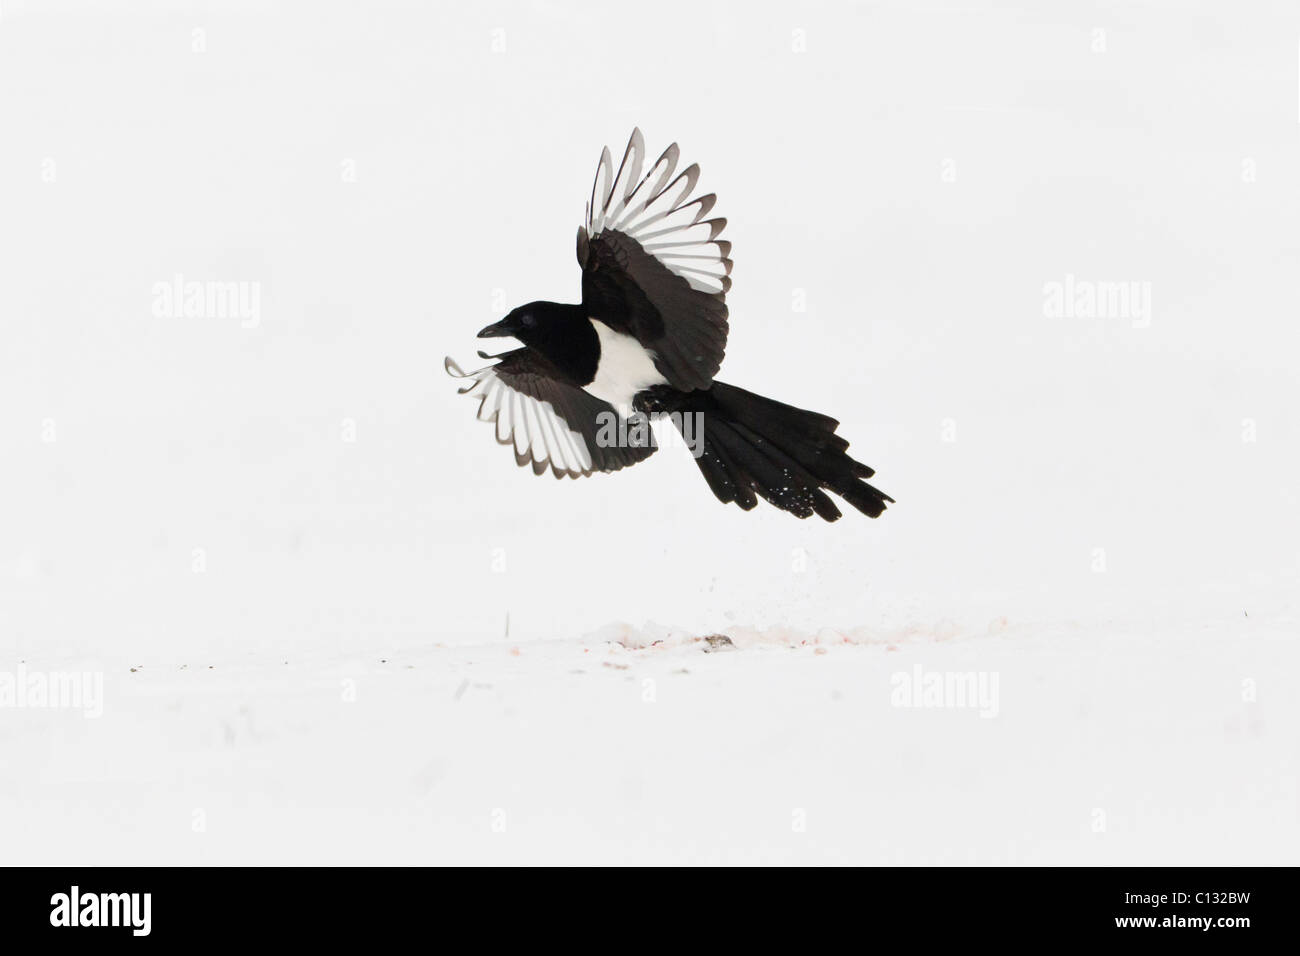 Common Magpie (Pica pica), in flight, winter Stock Photo